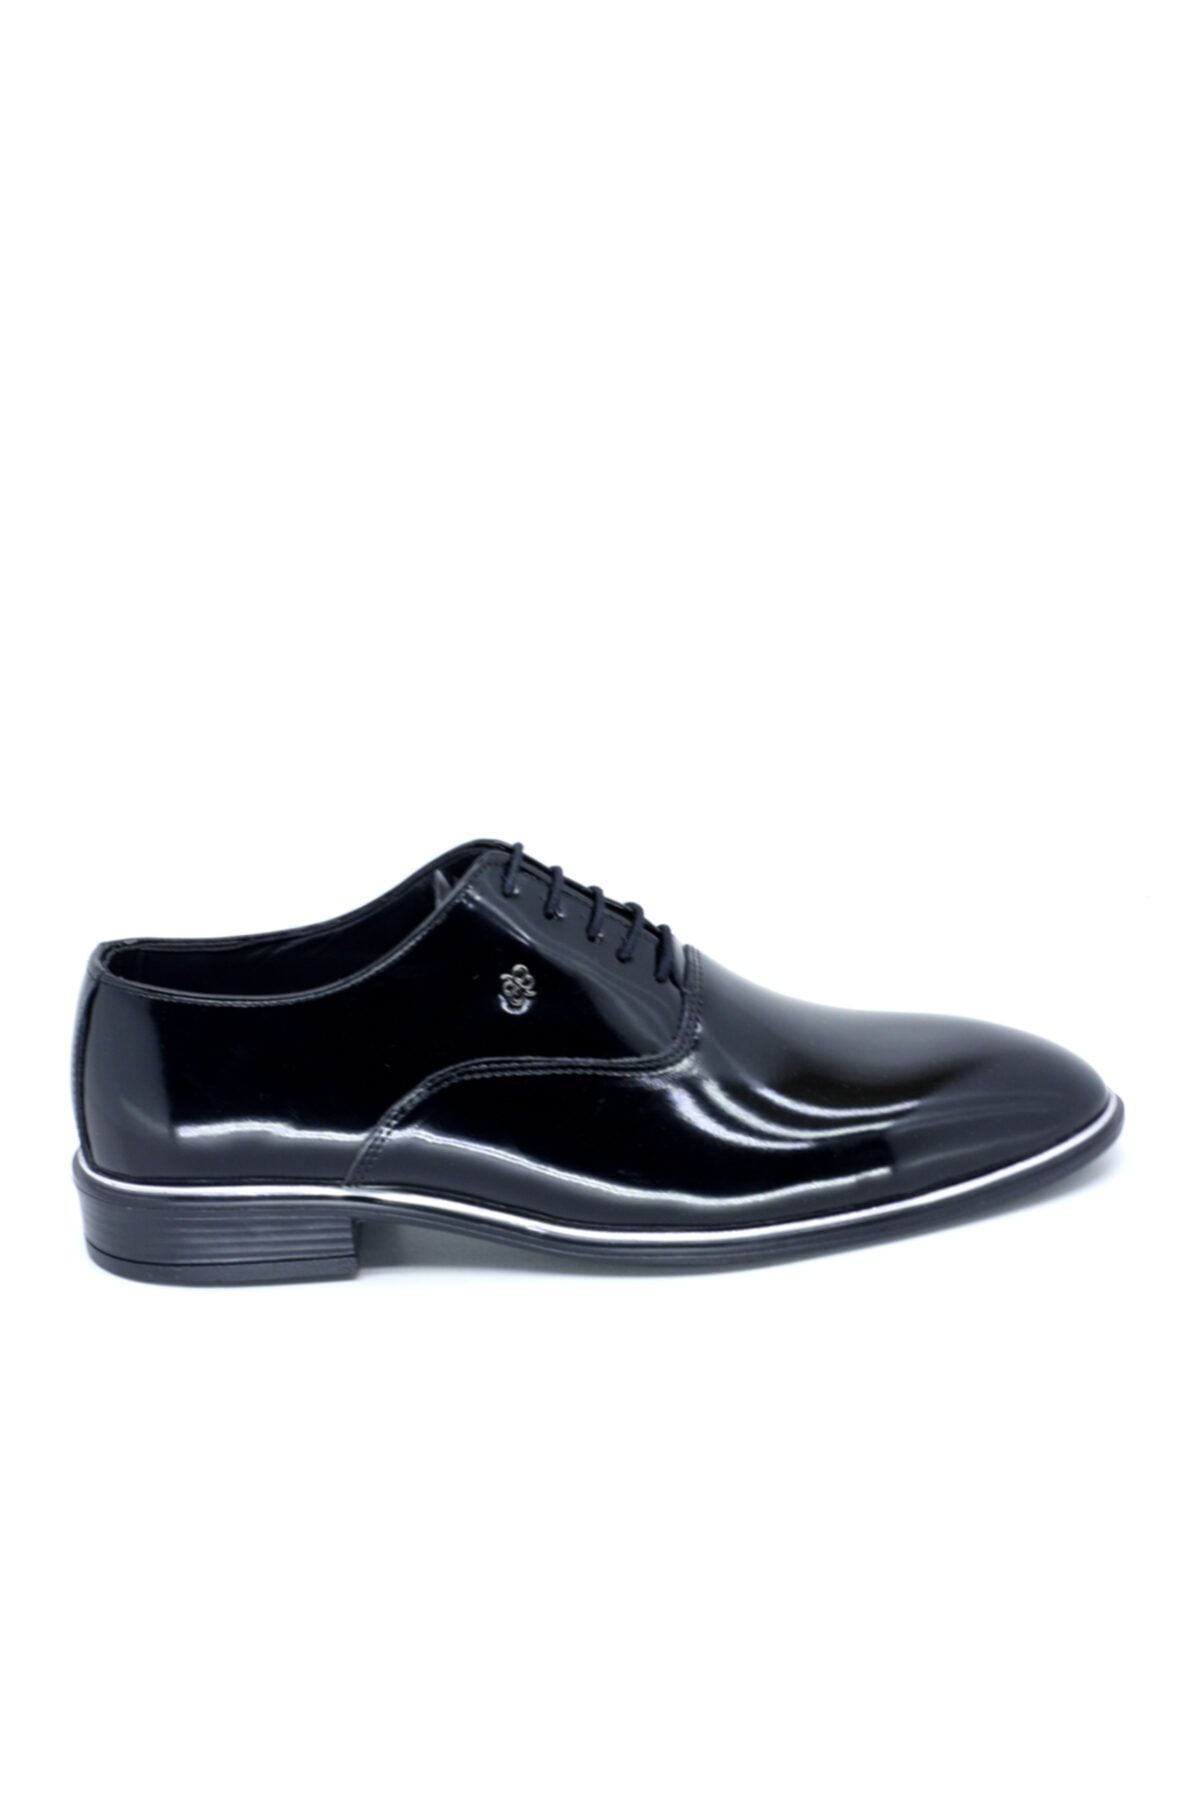 TRENDYSHOES Trendyshose 03556 Erkek Klasıktopuklu Günlük Ayakkabı